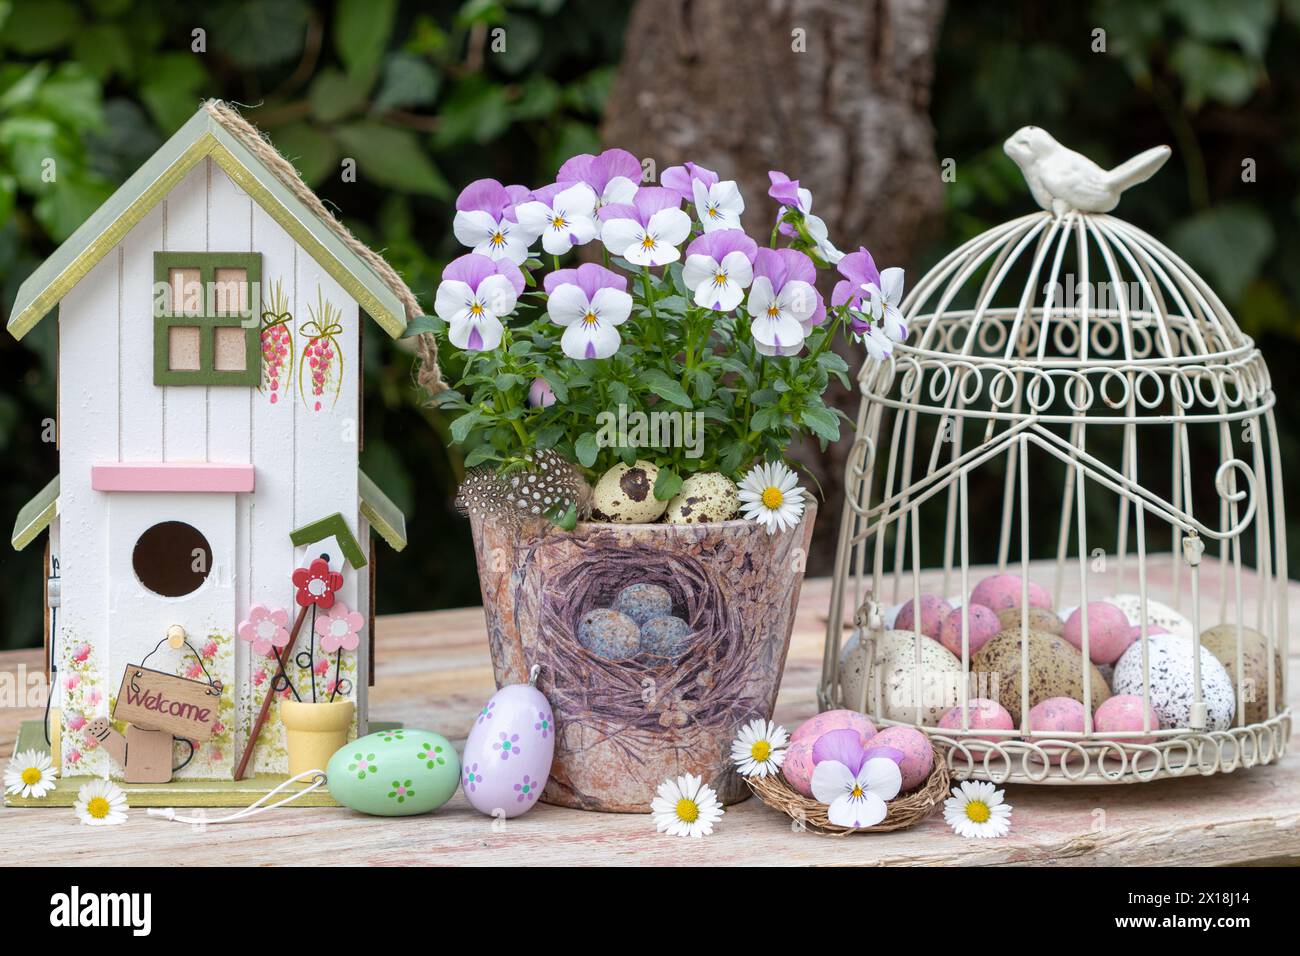 sistemazione pasquale con fiori di viola in vaso, casetta degli uccelli e uova di pasqua Foto Stock